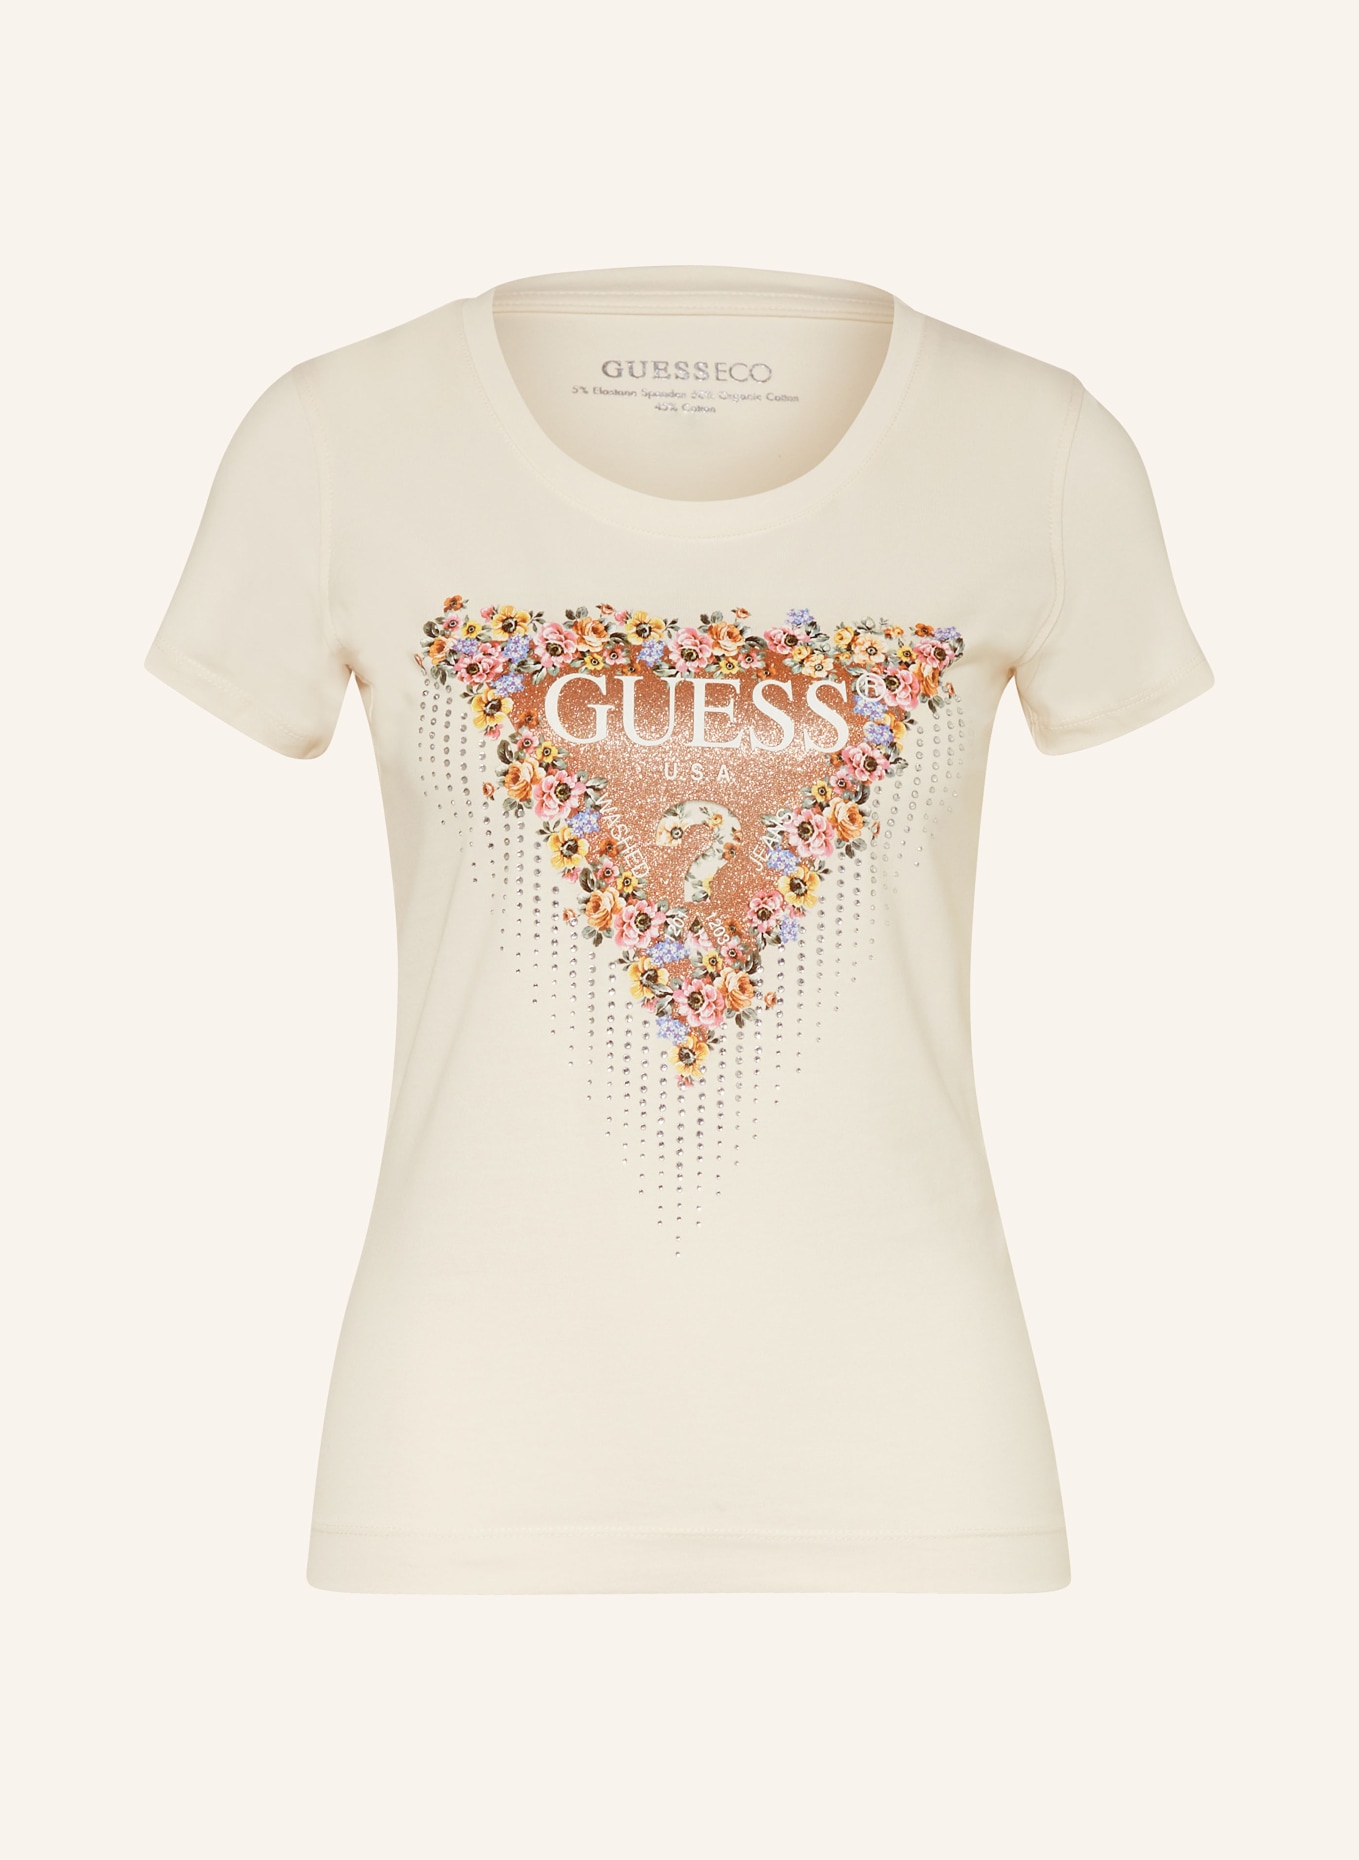 GUESS T-Shirt mit Schmucksteinen, Farbe: CREME/ BRAUN/ SILBER (Bild 1)